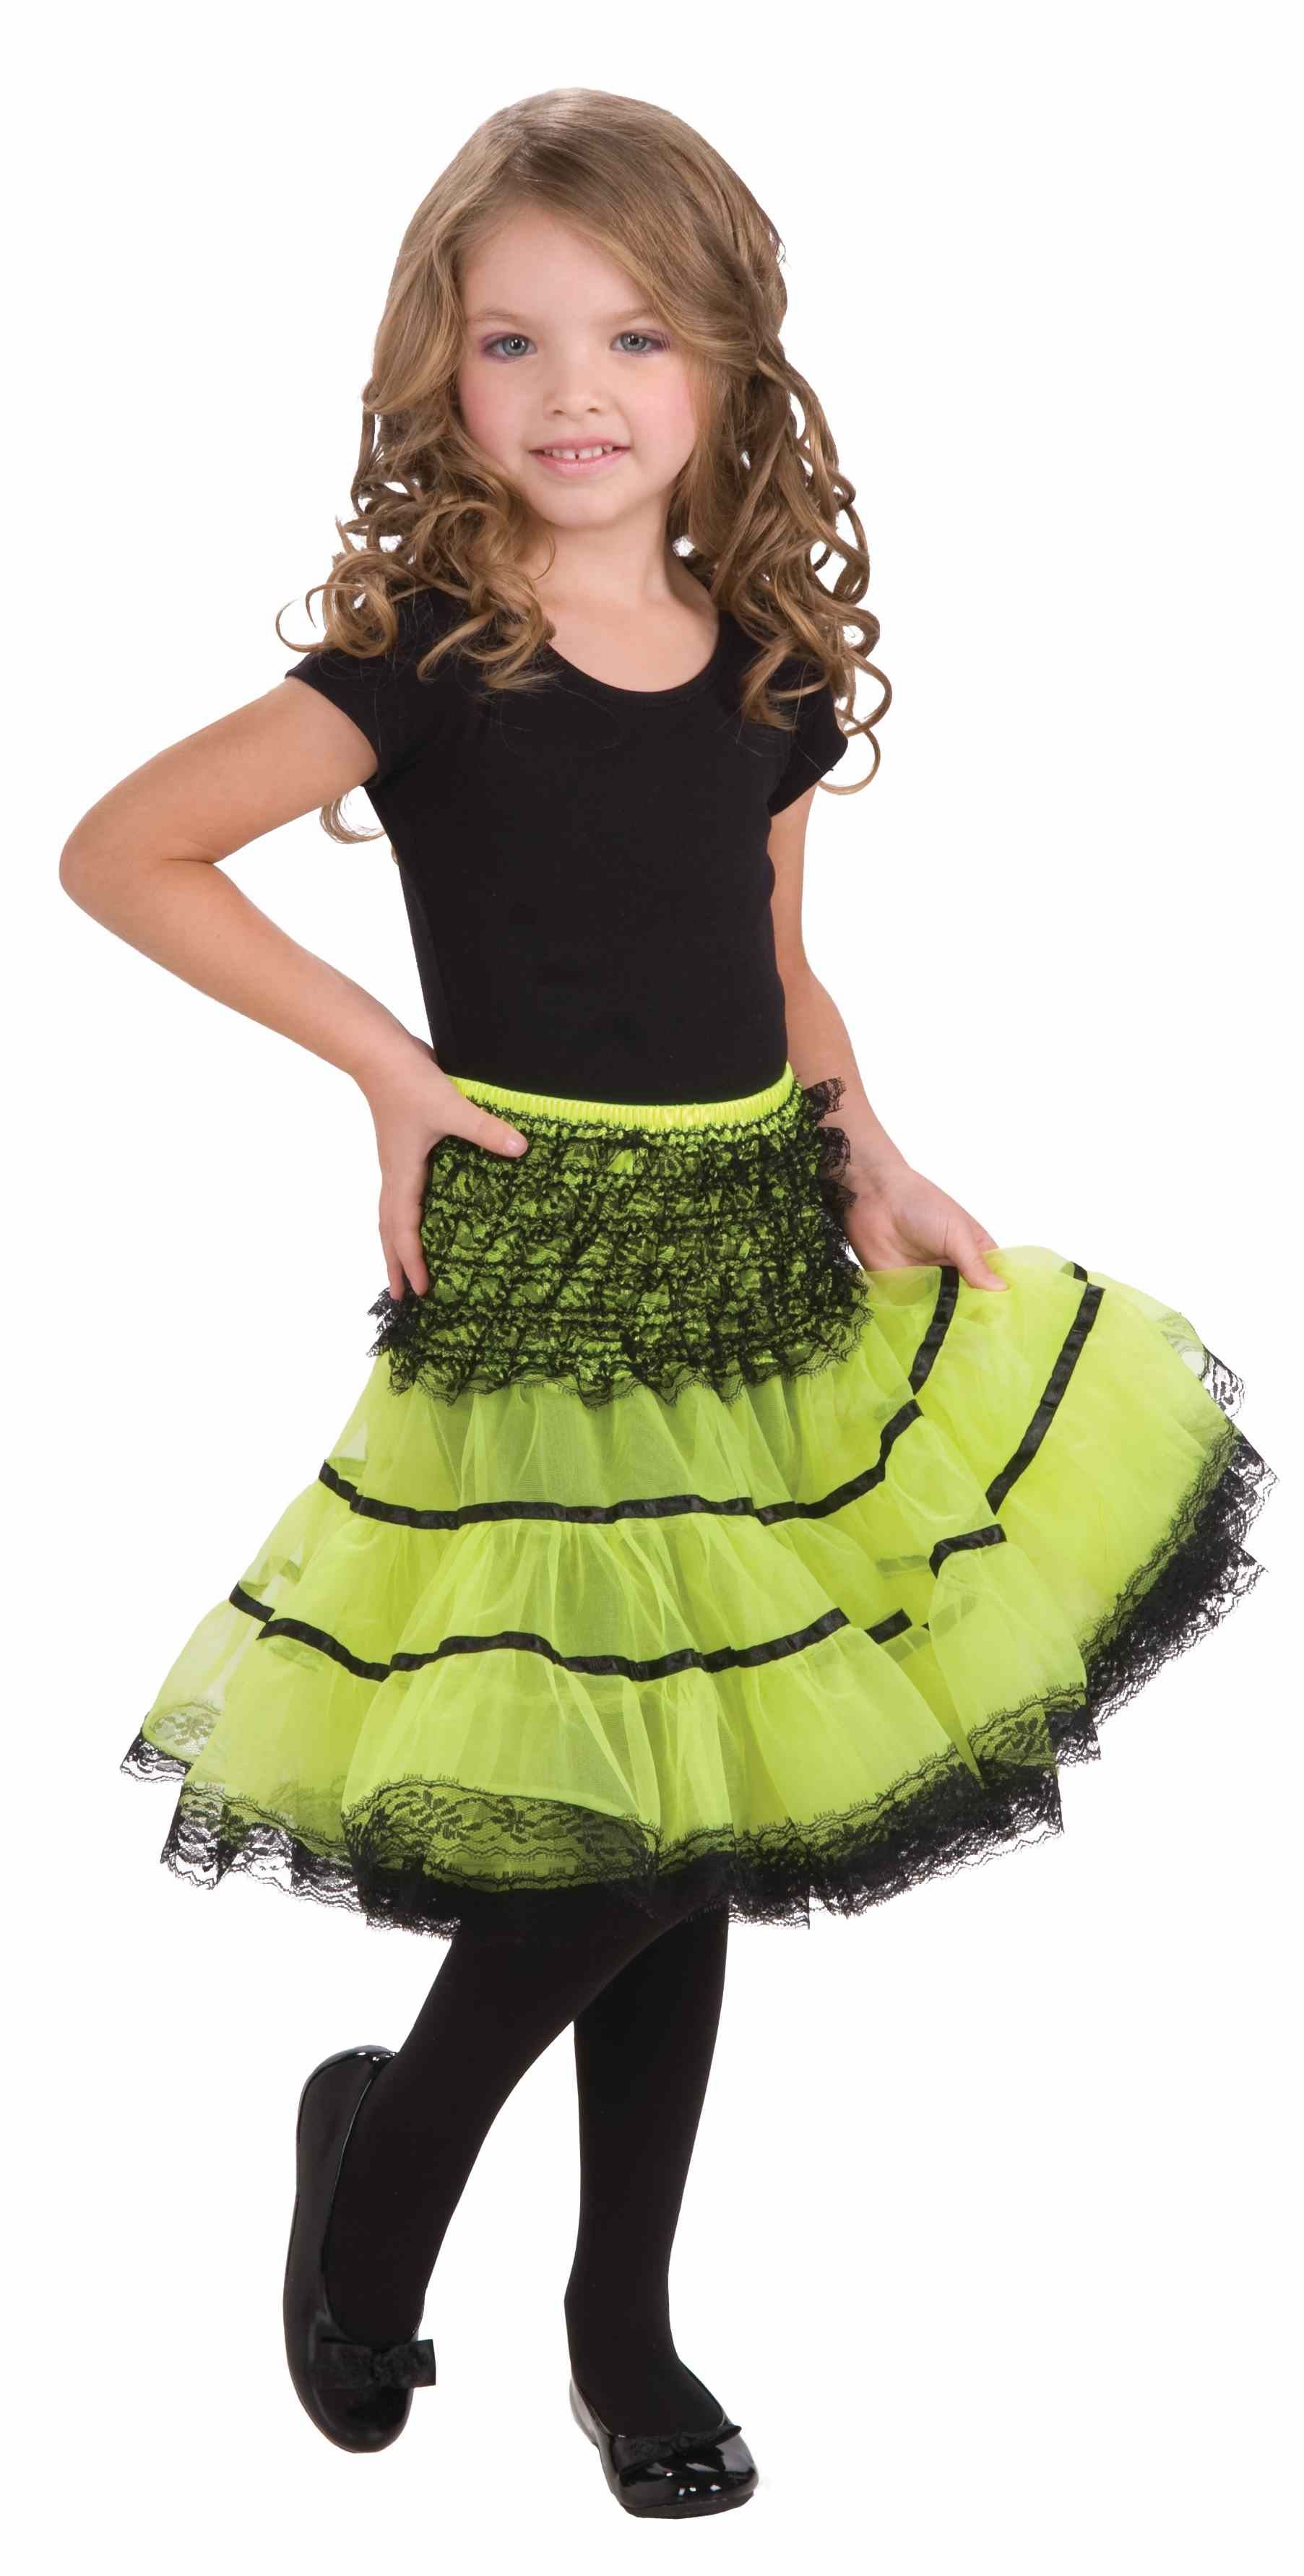 Bel terug De gasten motor Kids Neon Green And Black Girl Petticoat | $20.99 | The Costume Land